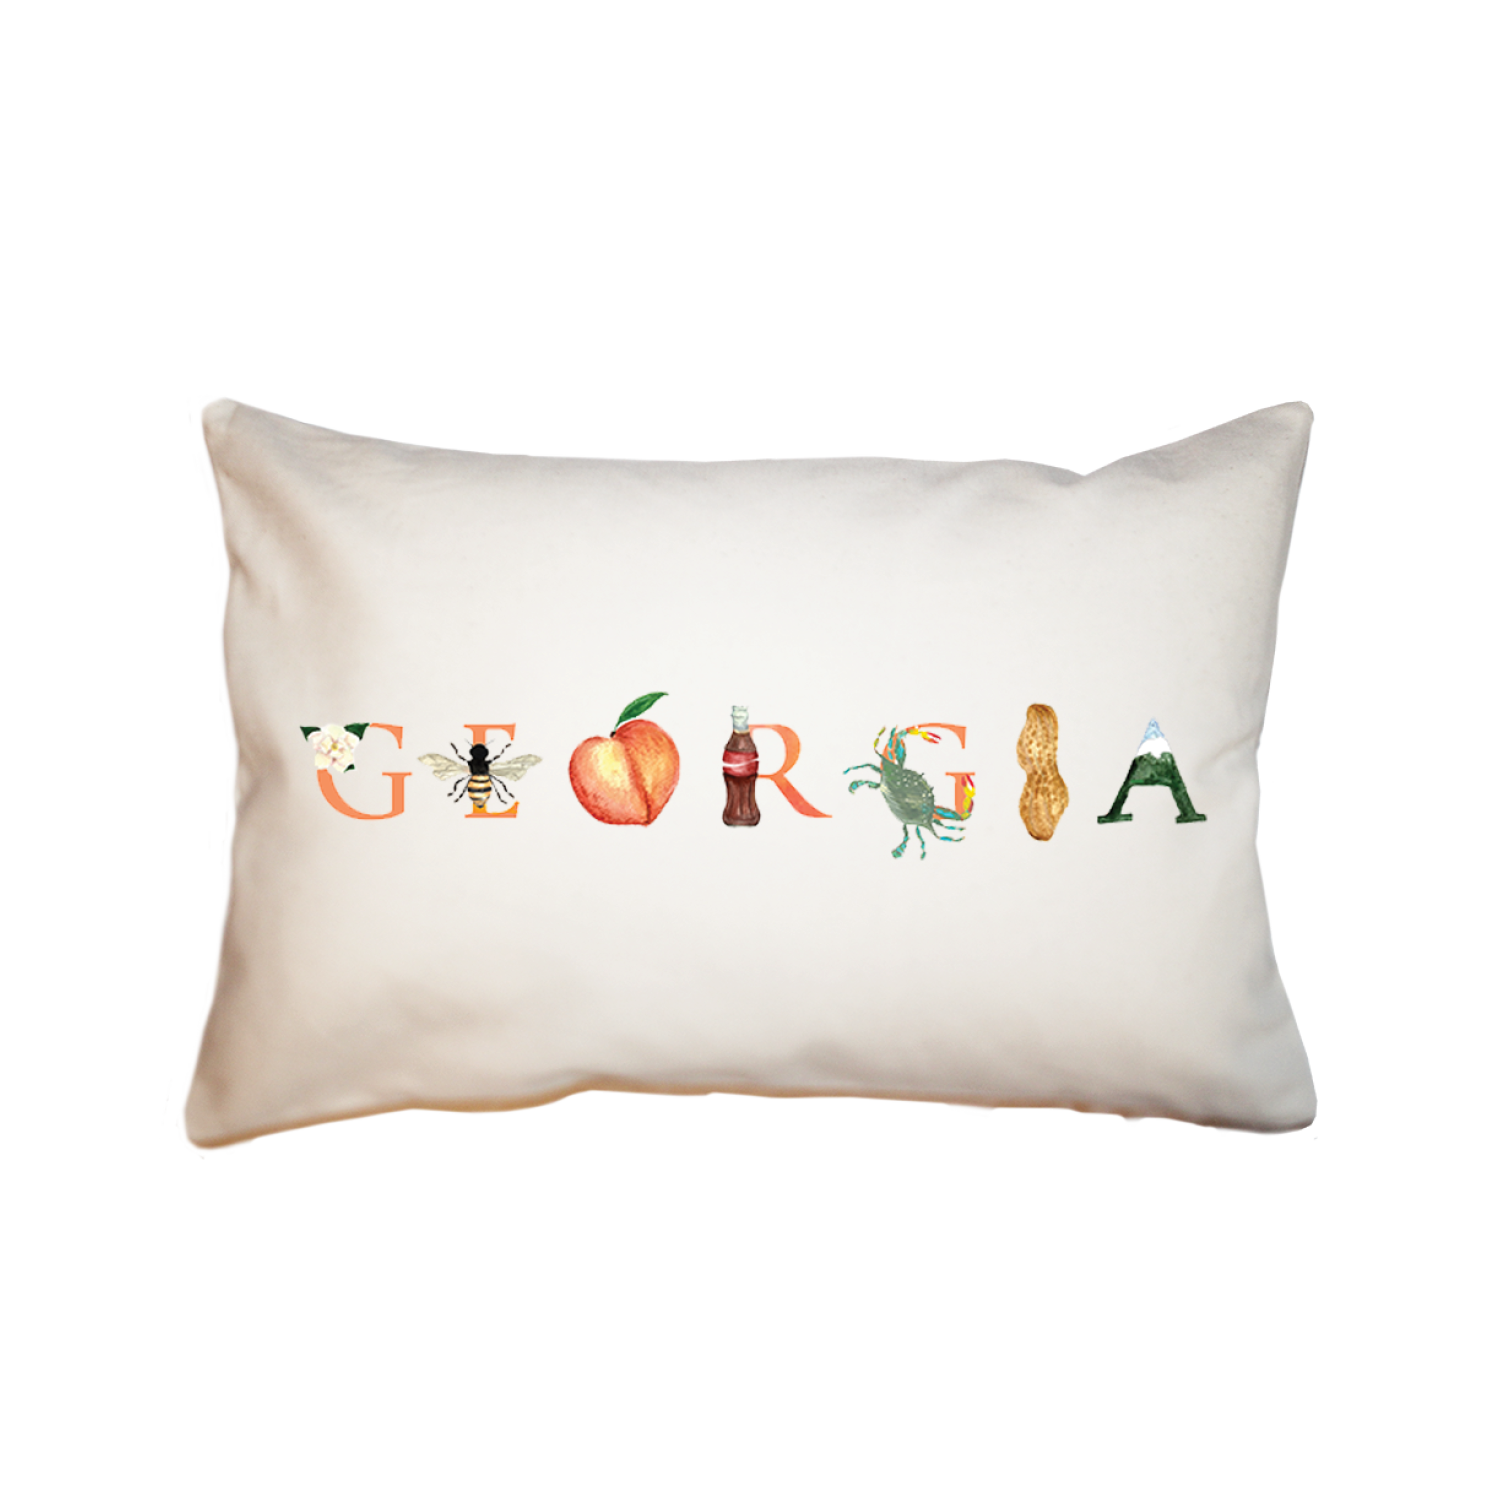 Georgia large rectangle pillow